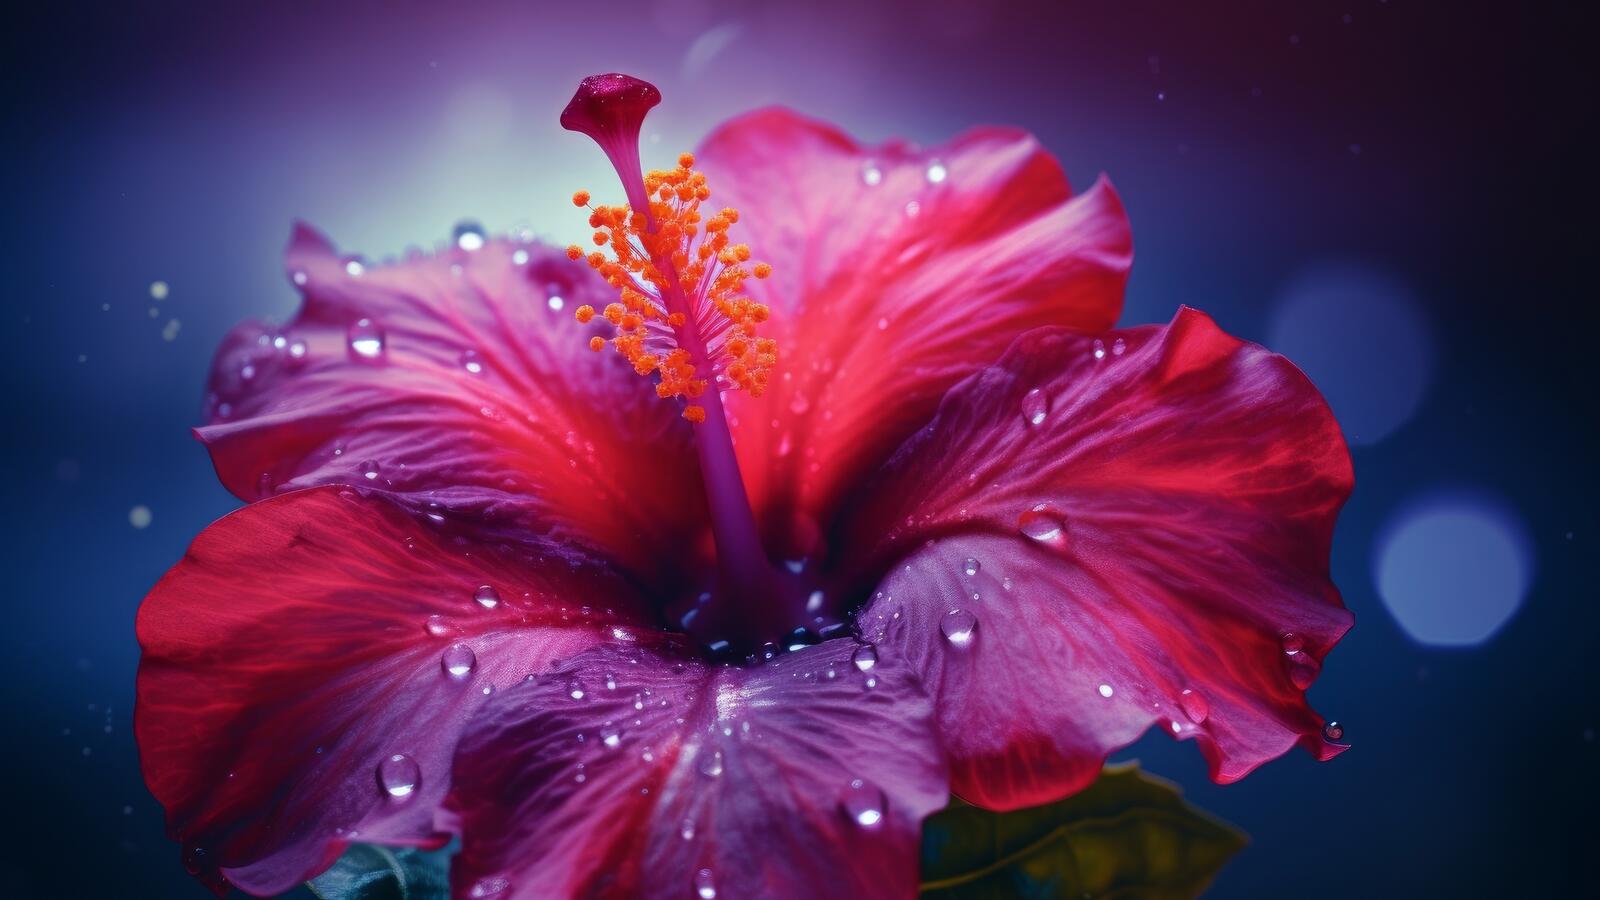 Бесплатное фото Красивый красный цветочек с каплями дождя на лепестках крупным планом